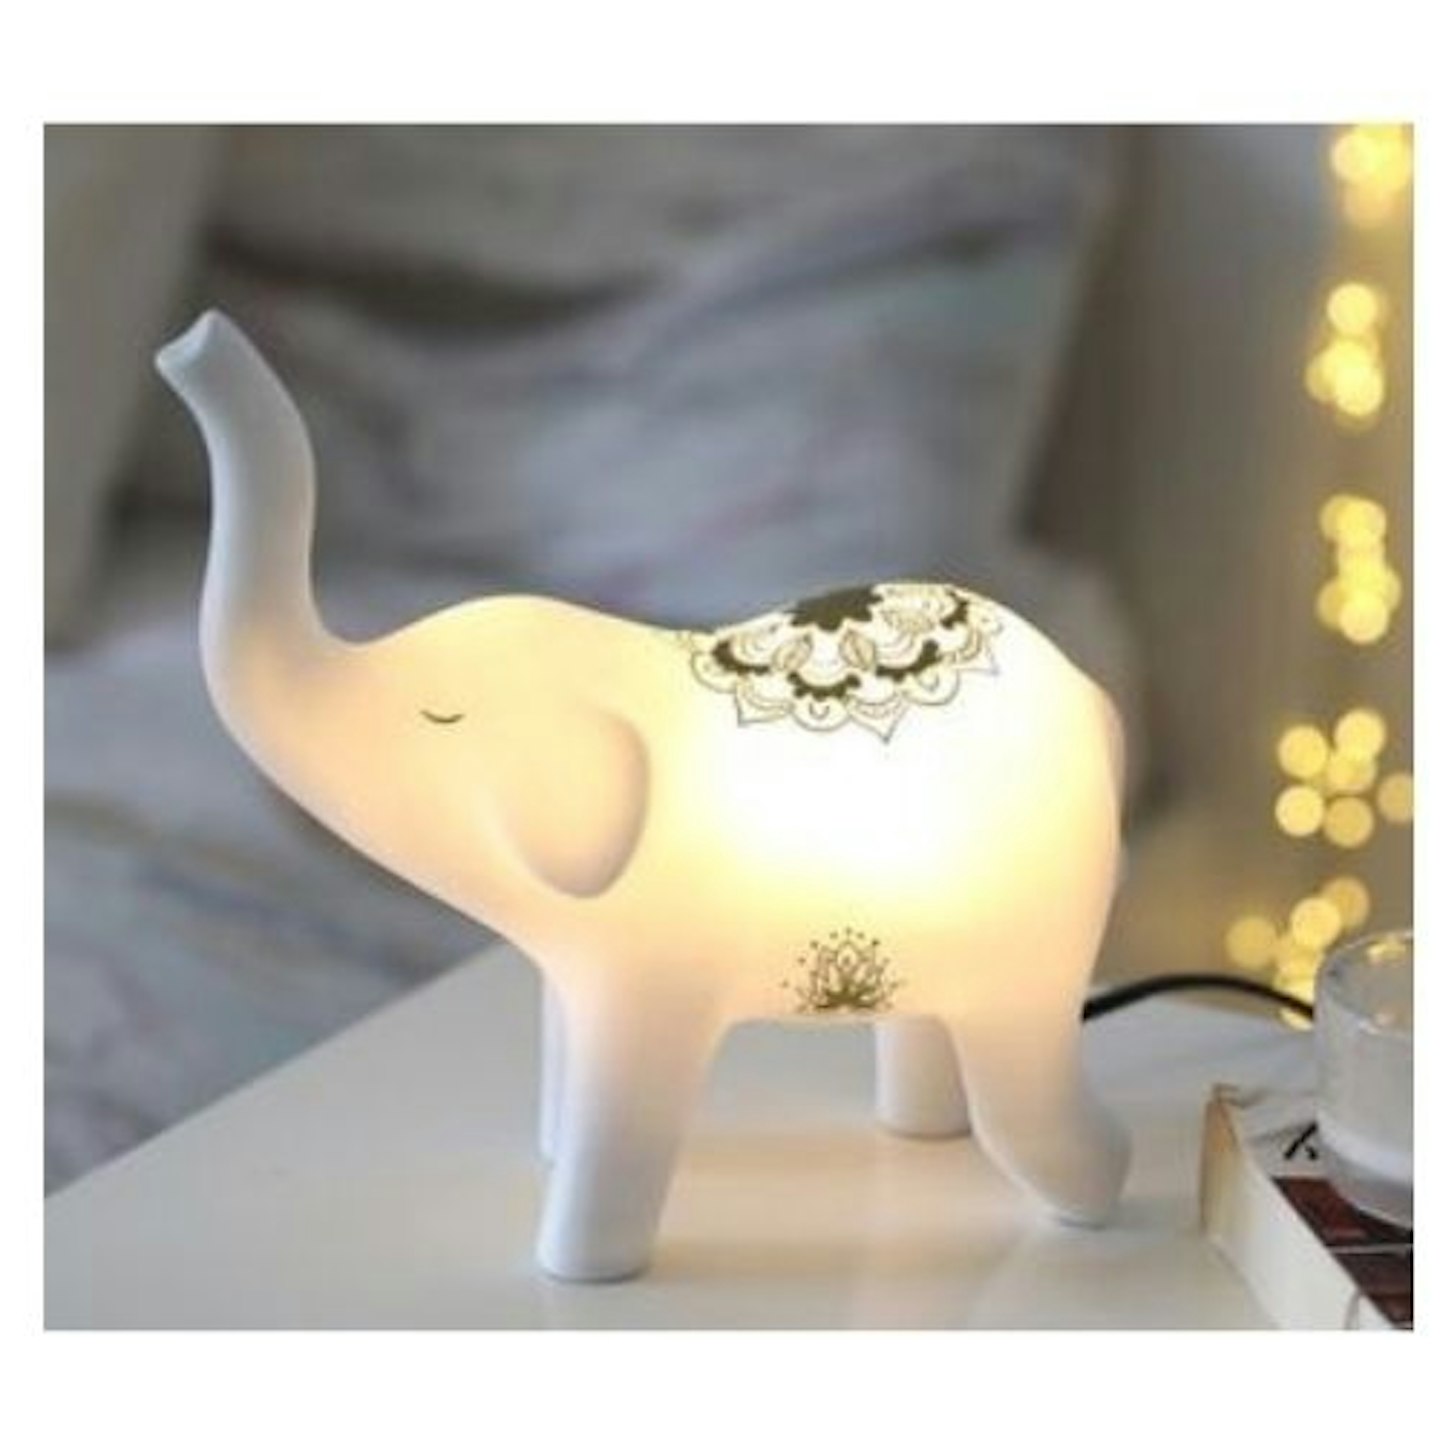 Mandala Elephant Night Light on table